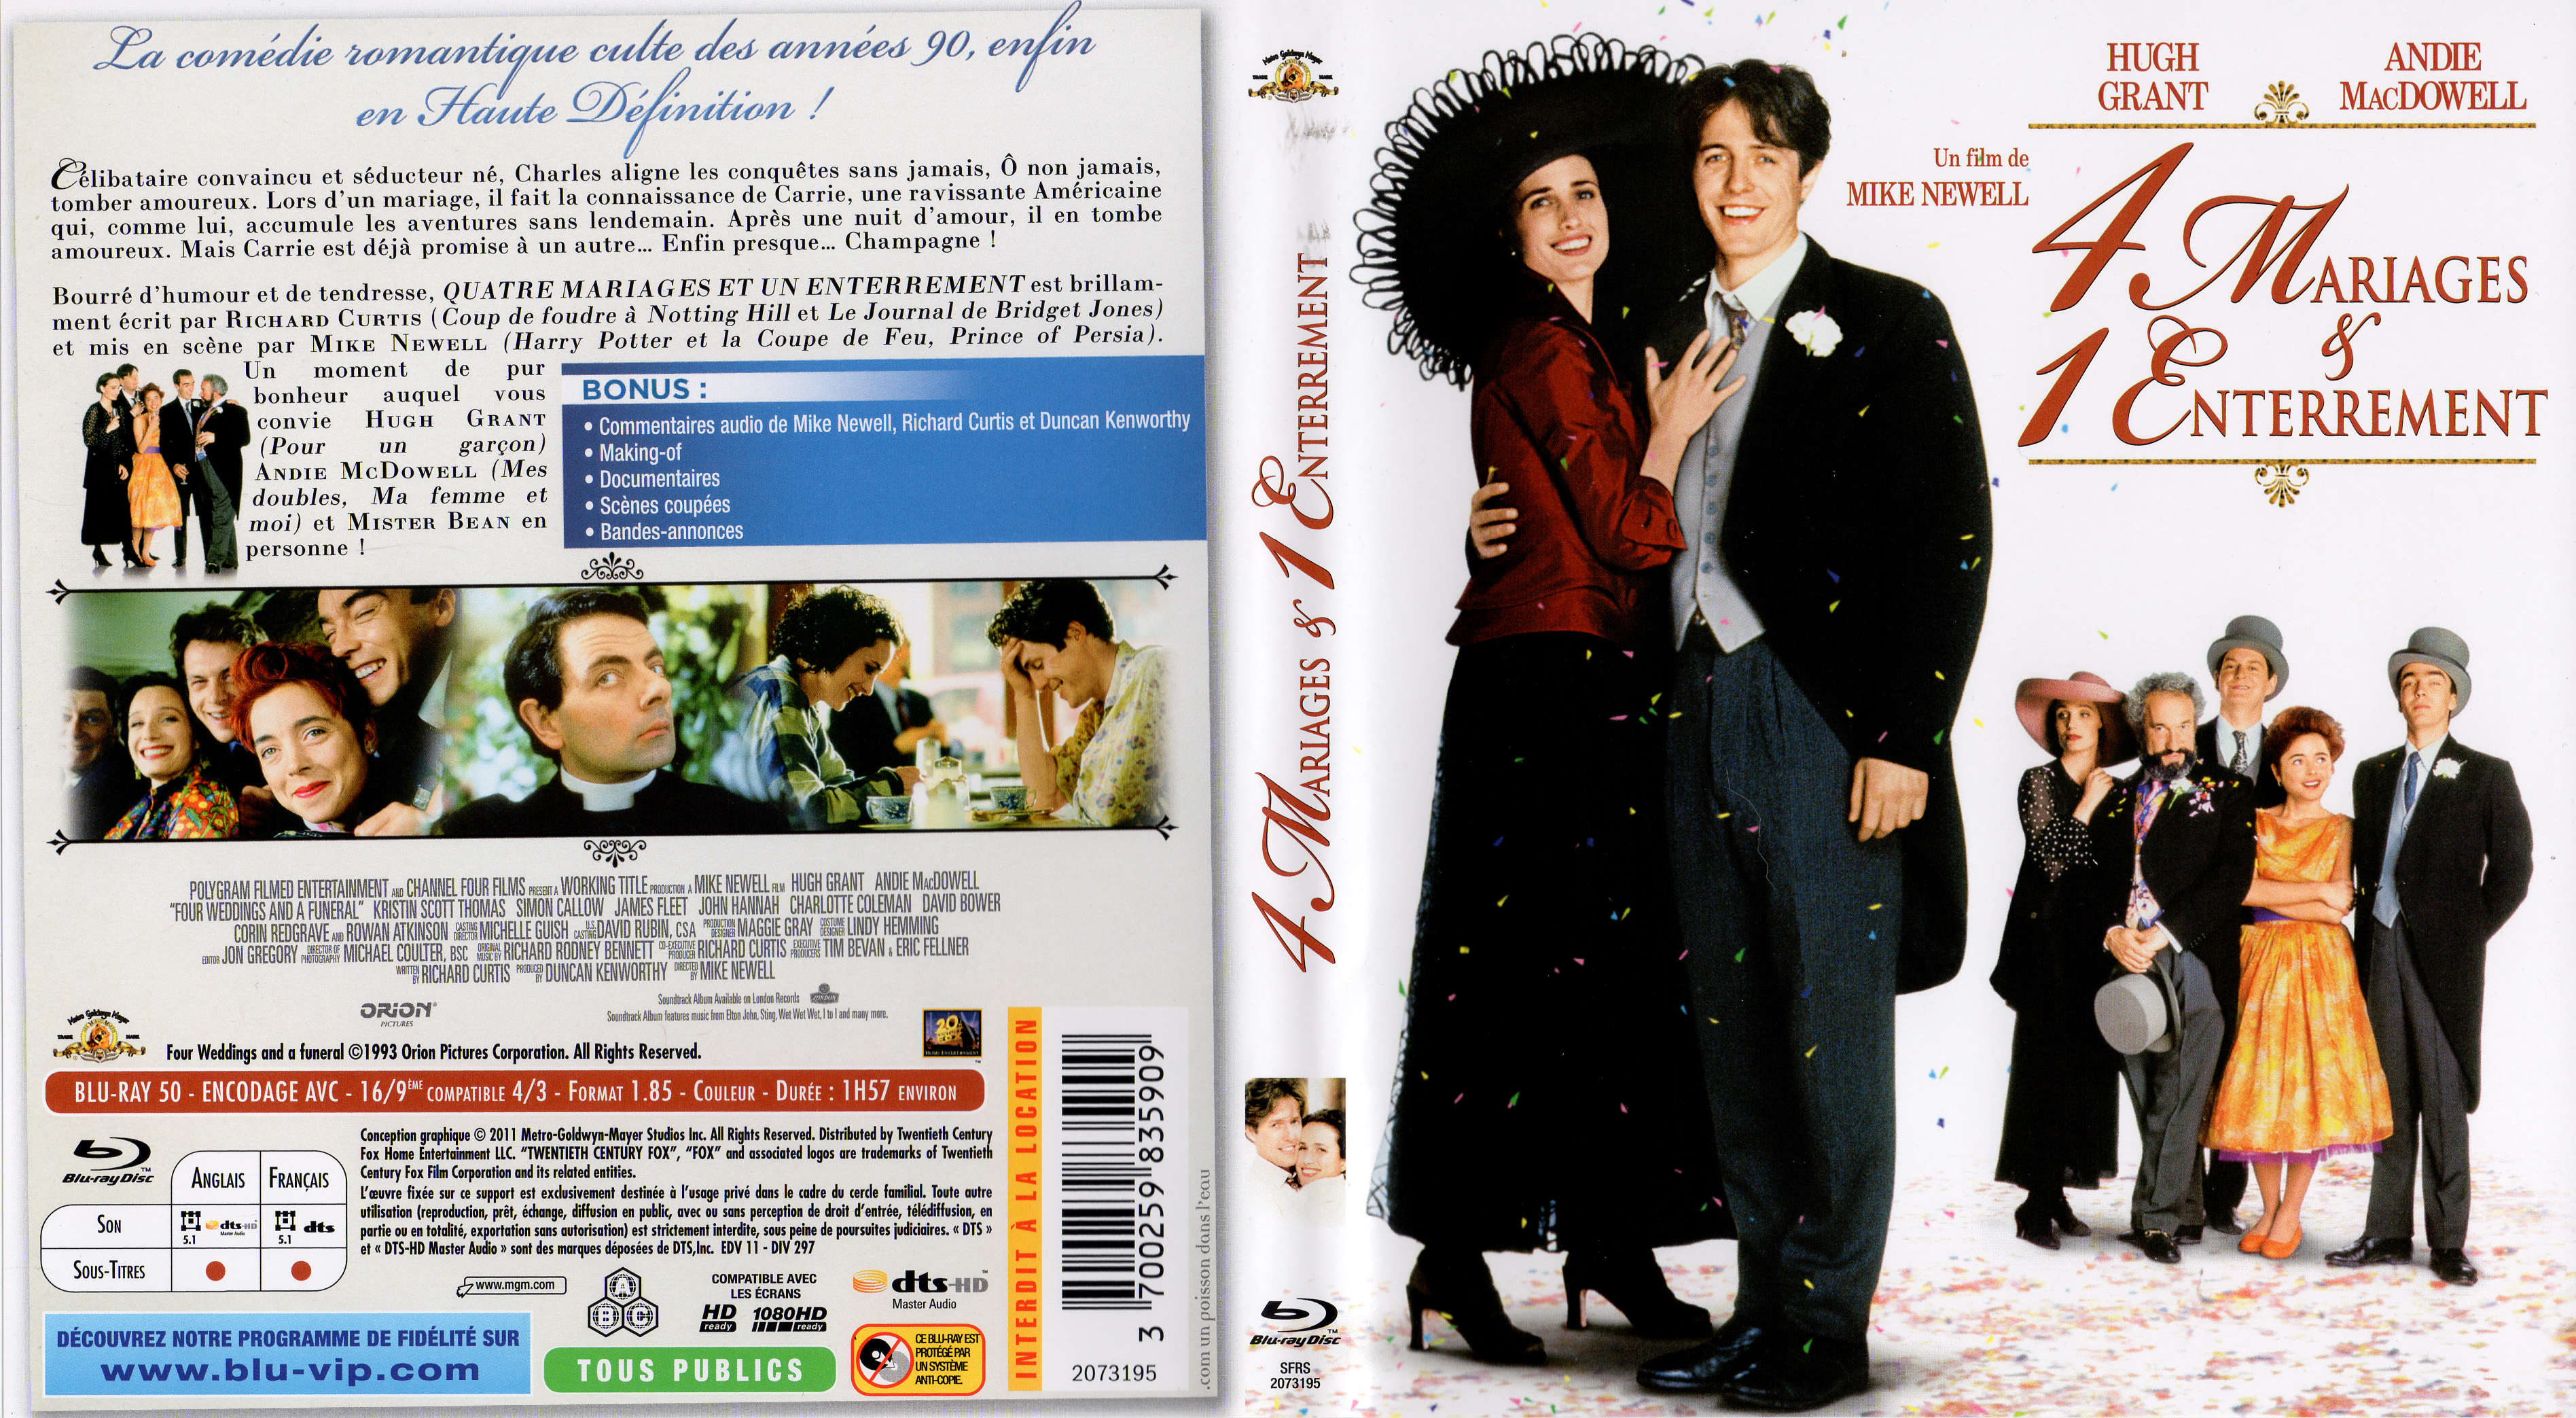 Jaquette DVD 4 mariages et 1 enterrement (BLU-RAY)